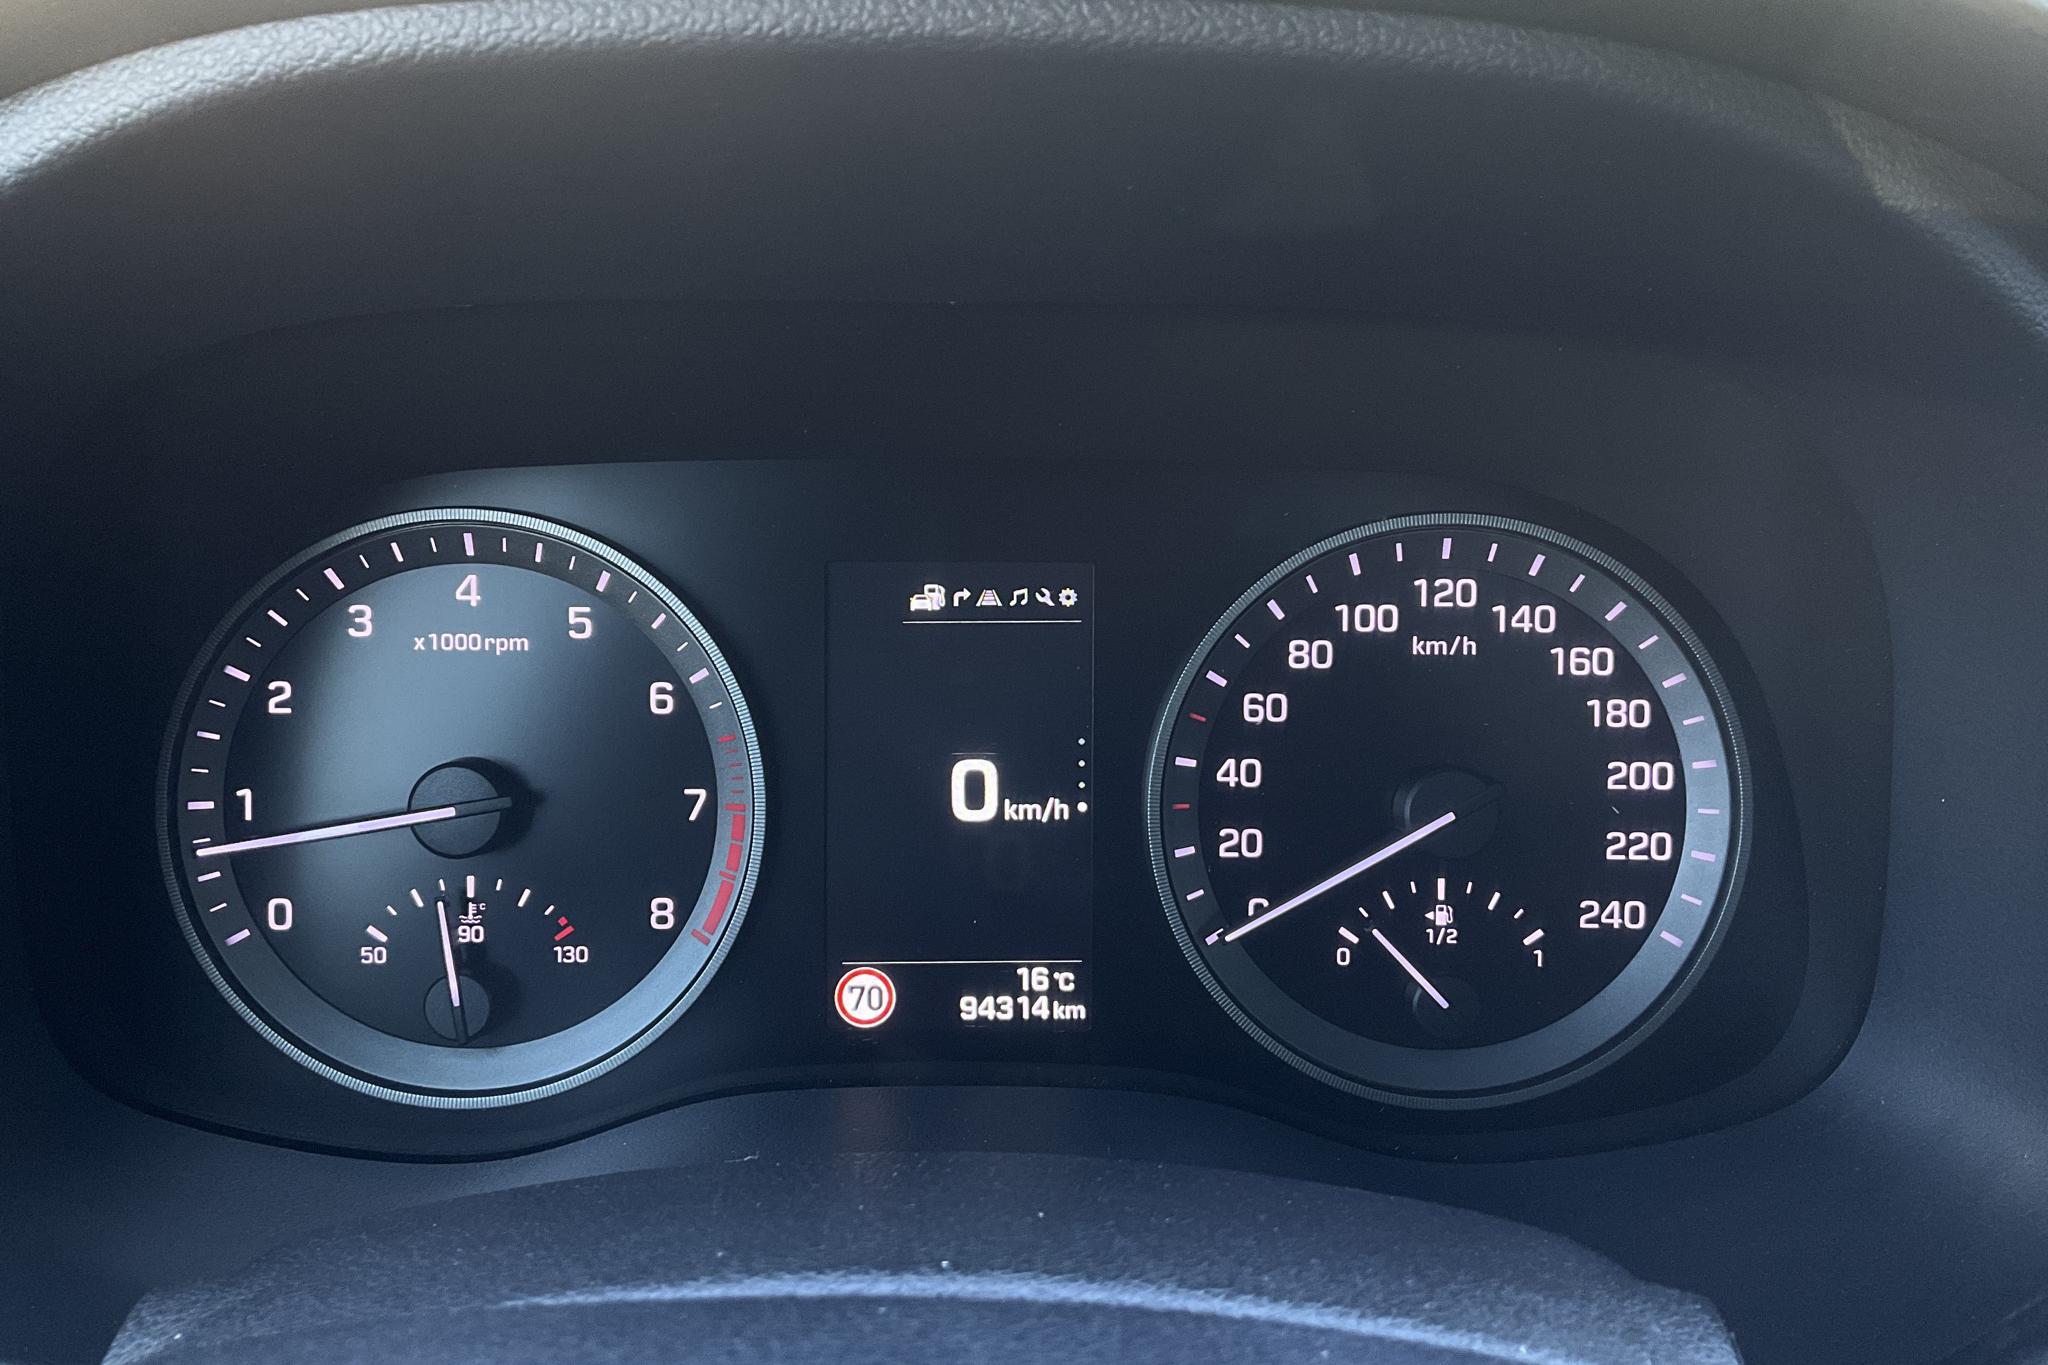 Hyundai Tucson 1.6 T-GDI 4WD (177hk) - 94 310 km - Manual - black - 2018